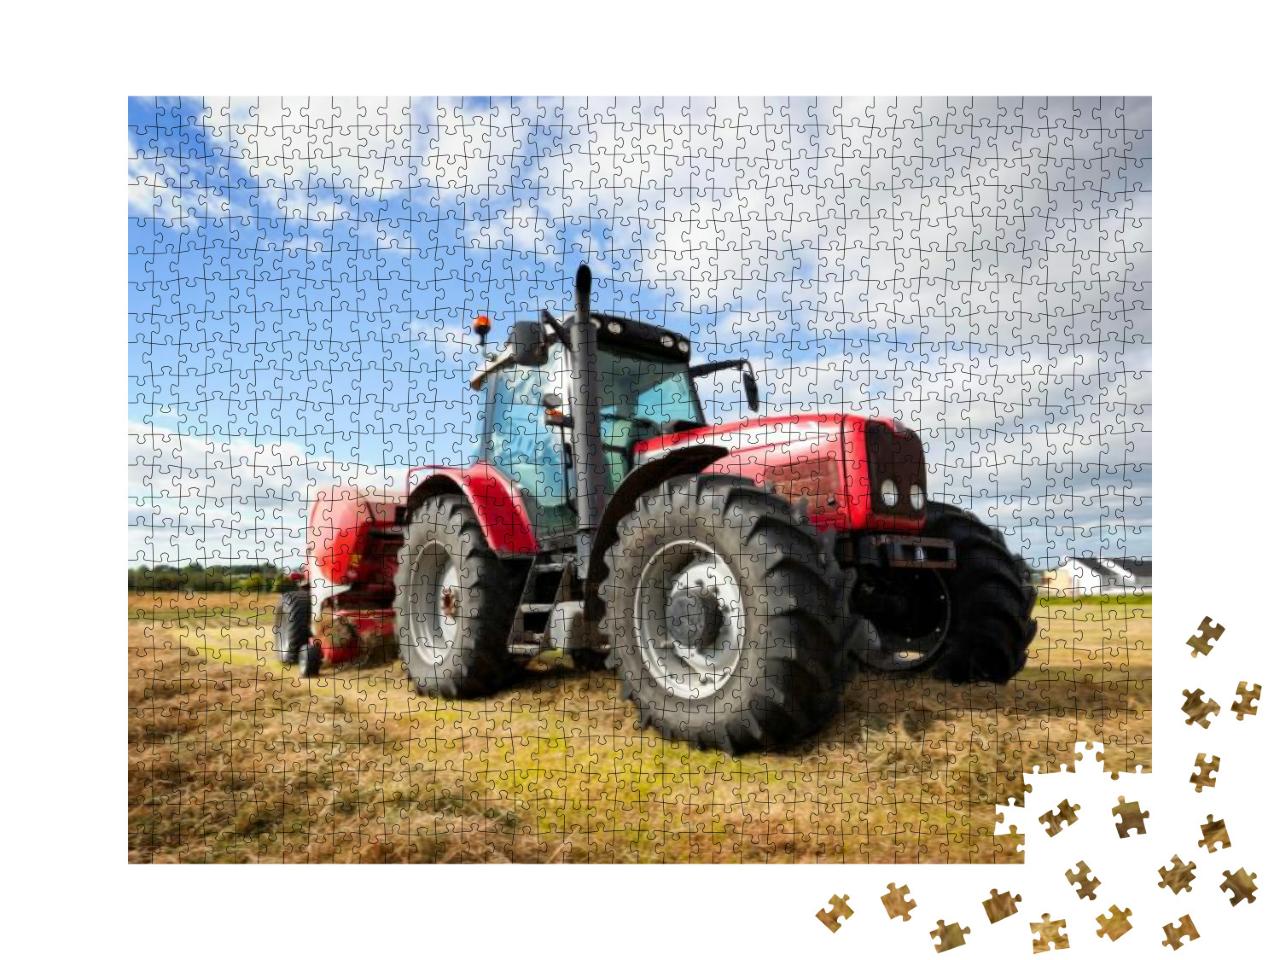 Puzzle 1000 Teile „Großer Traktor sammelt Heuhaufen auf dem Feld an einem sonnigen Tag“